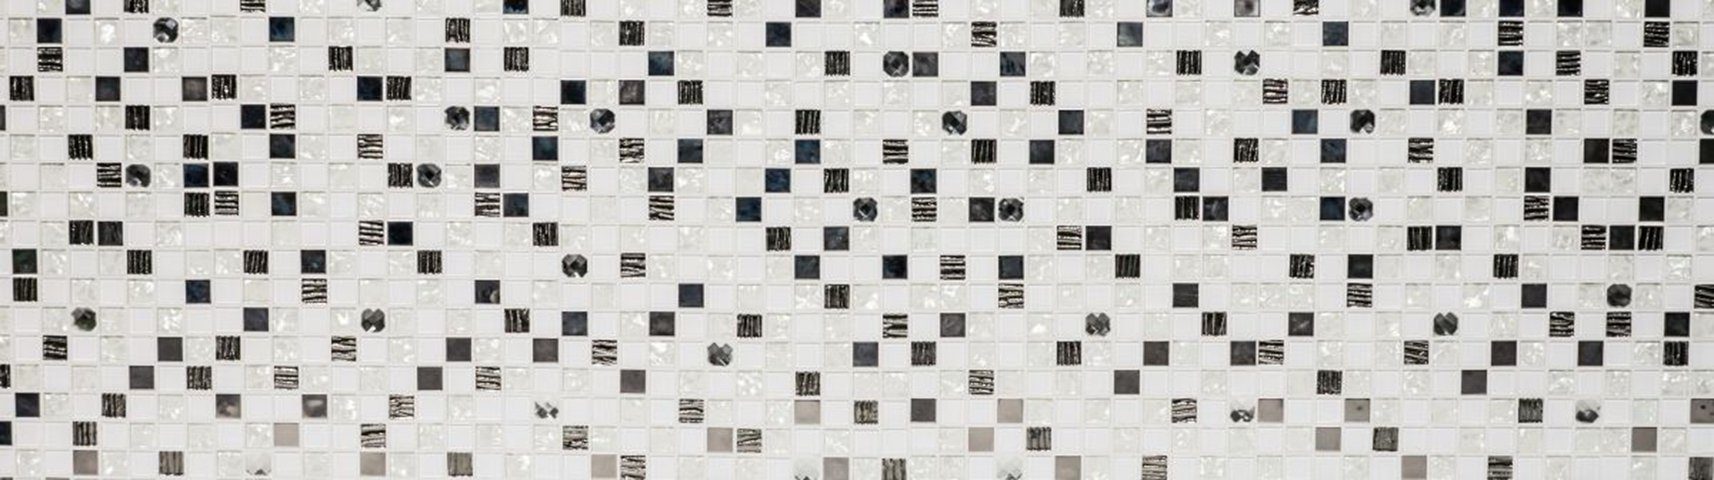 Mosani weiß / Mosaikfliesen glänzend Edelstahl 10 Glasmosaik Mosaik Matten